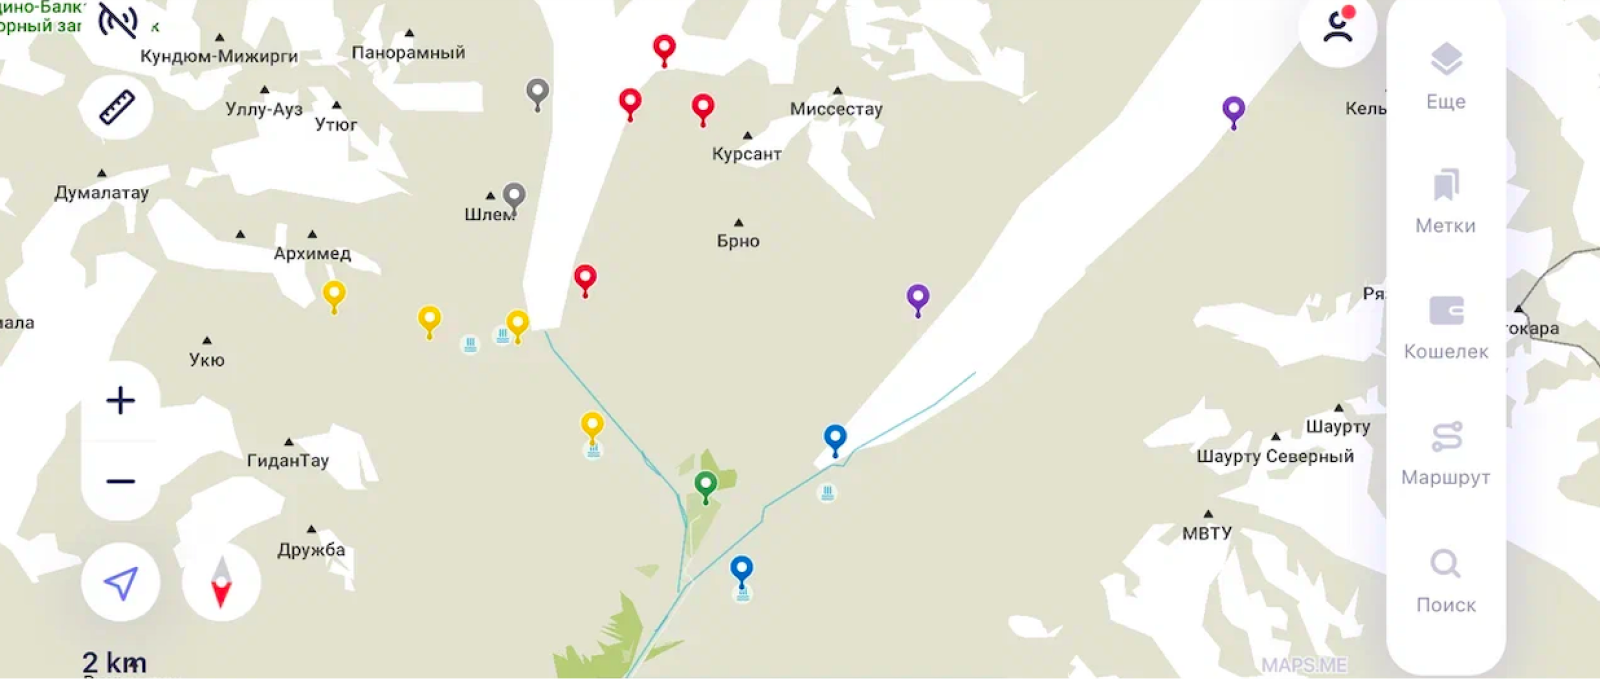 Места, куда хотела пойти, я отмечала в Maps.me. Фиолетовым отмечены локации, куда я не дошла, — хижины «Миссес-кош» и «Баран-кош»